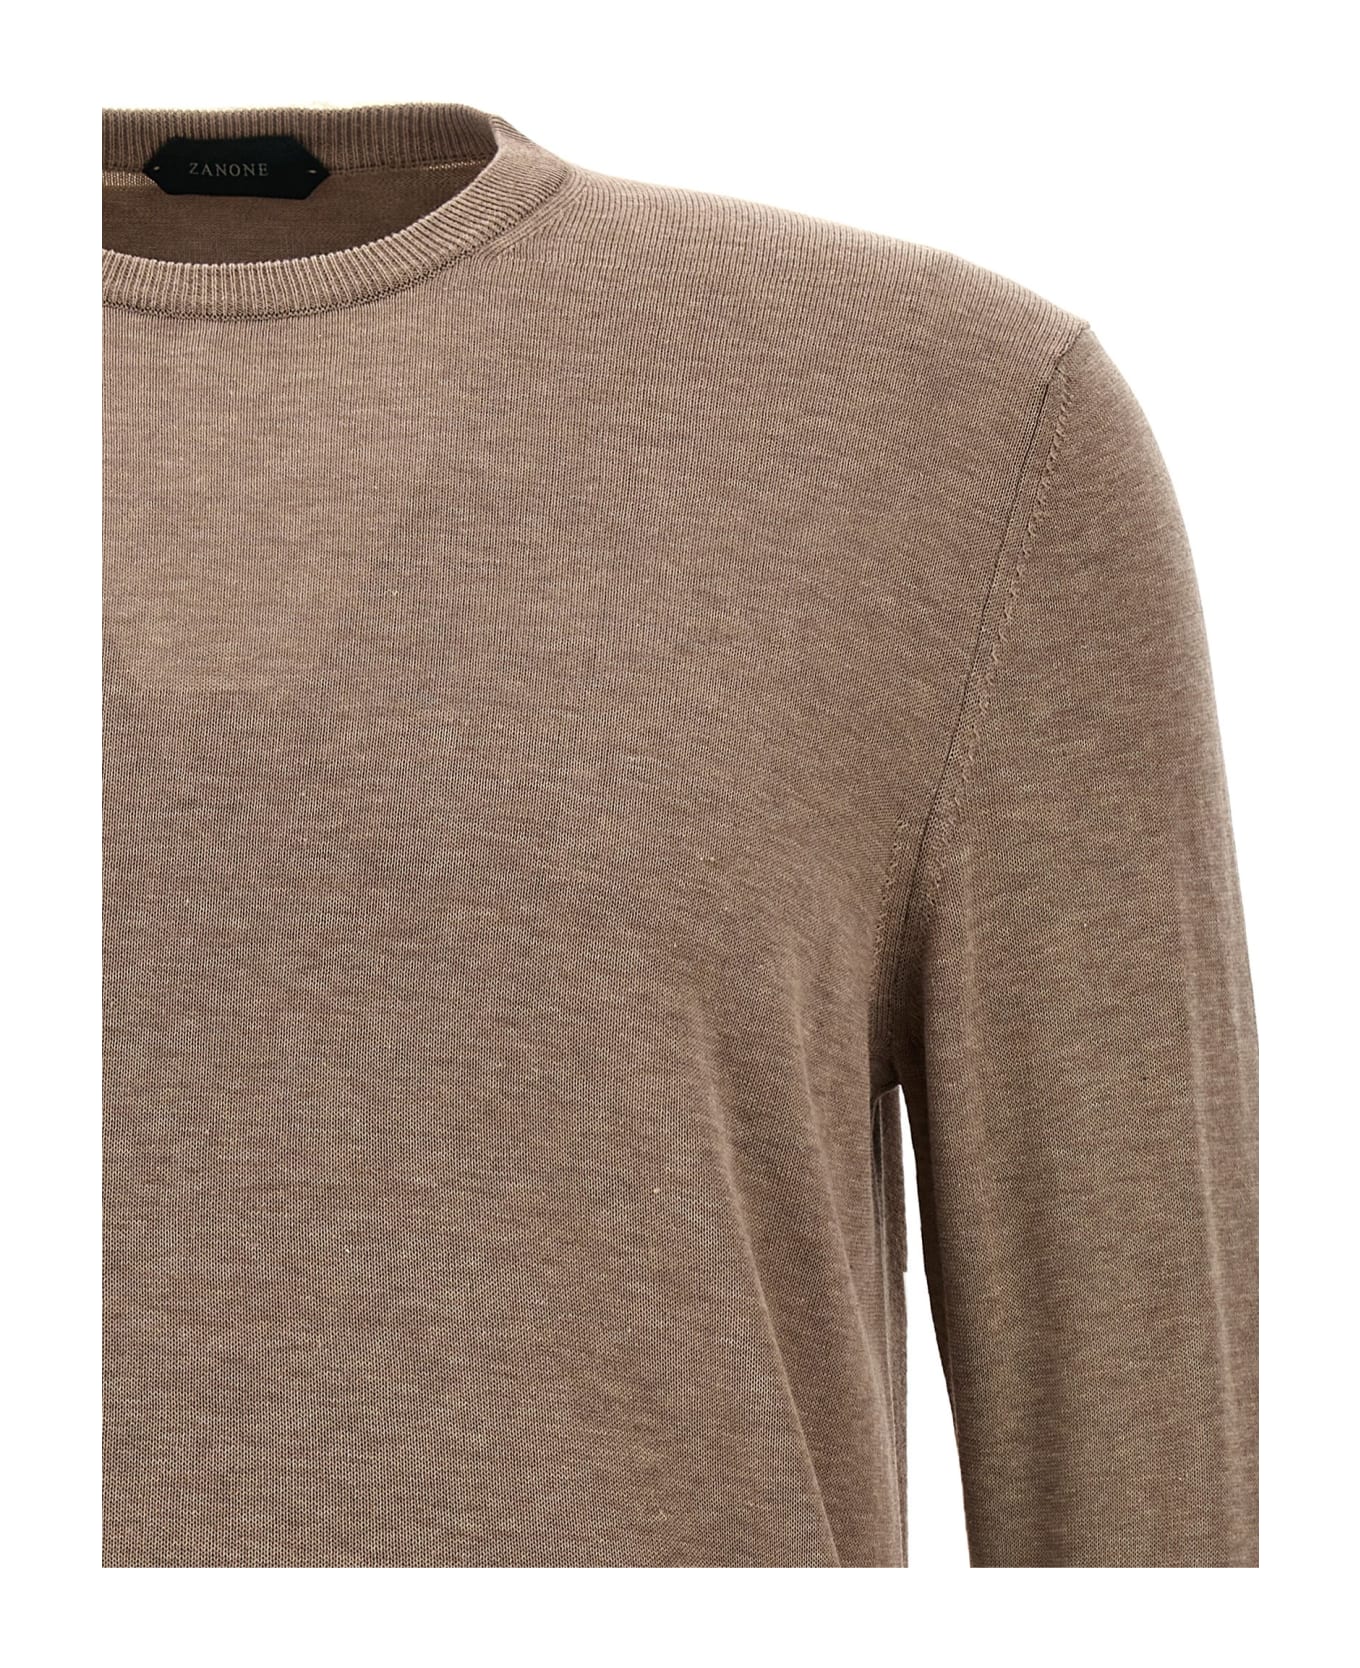 Zanone Cotton Crepe Sweater - Beige